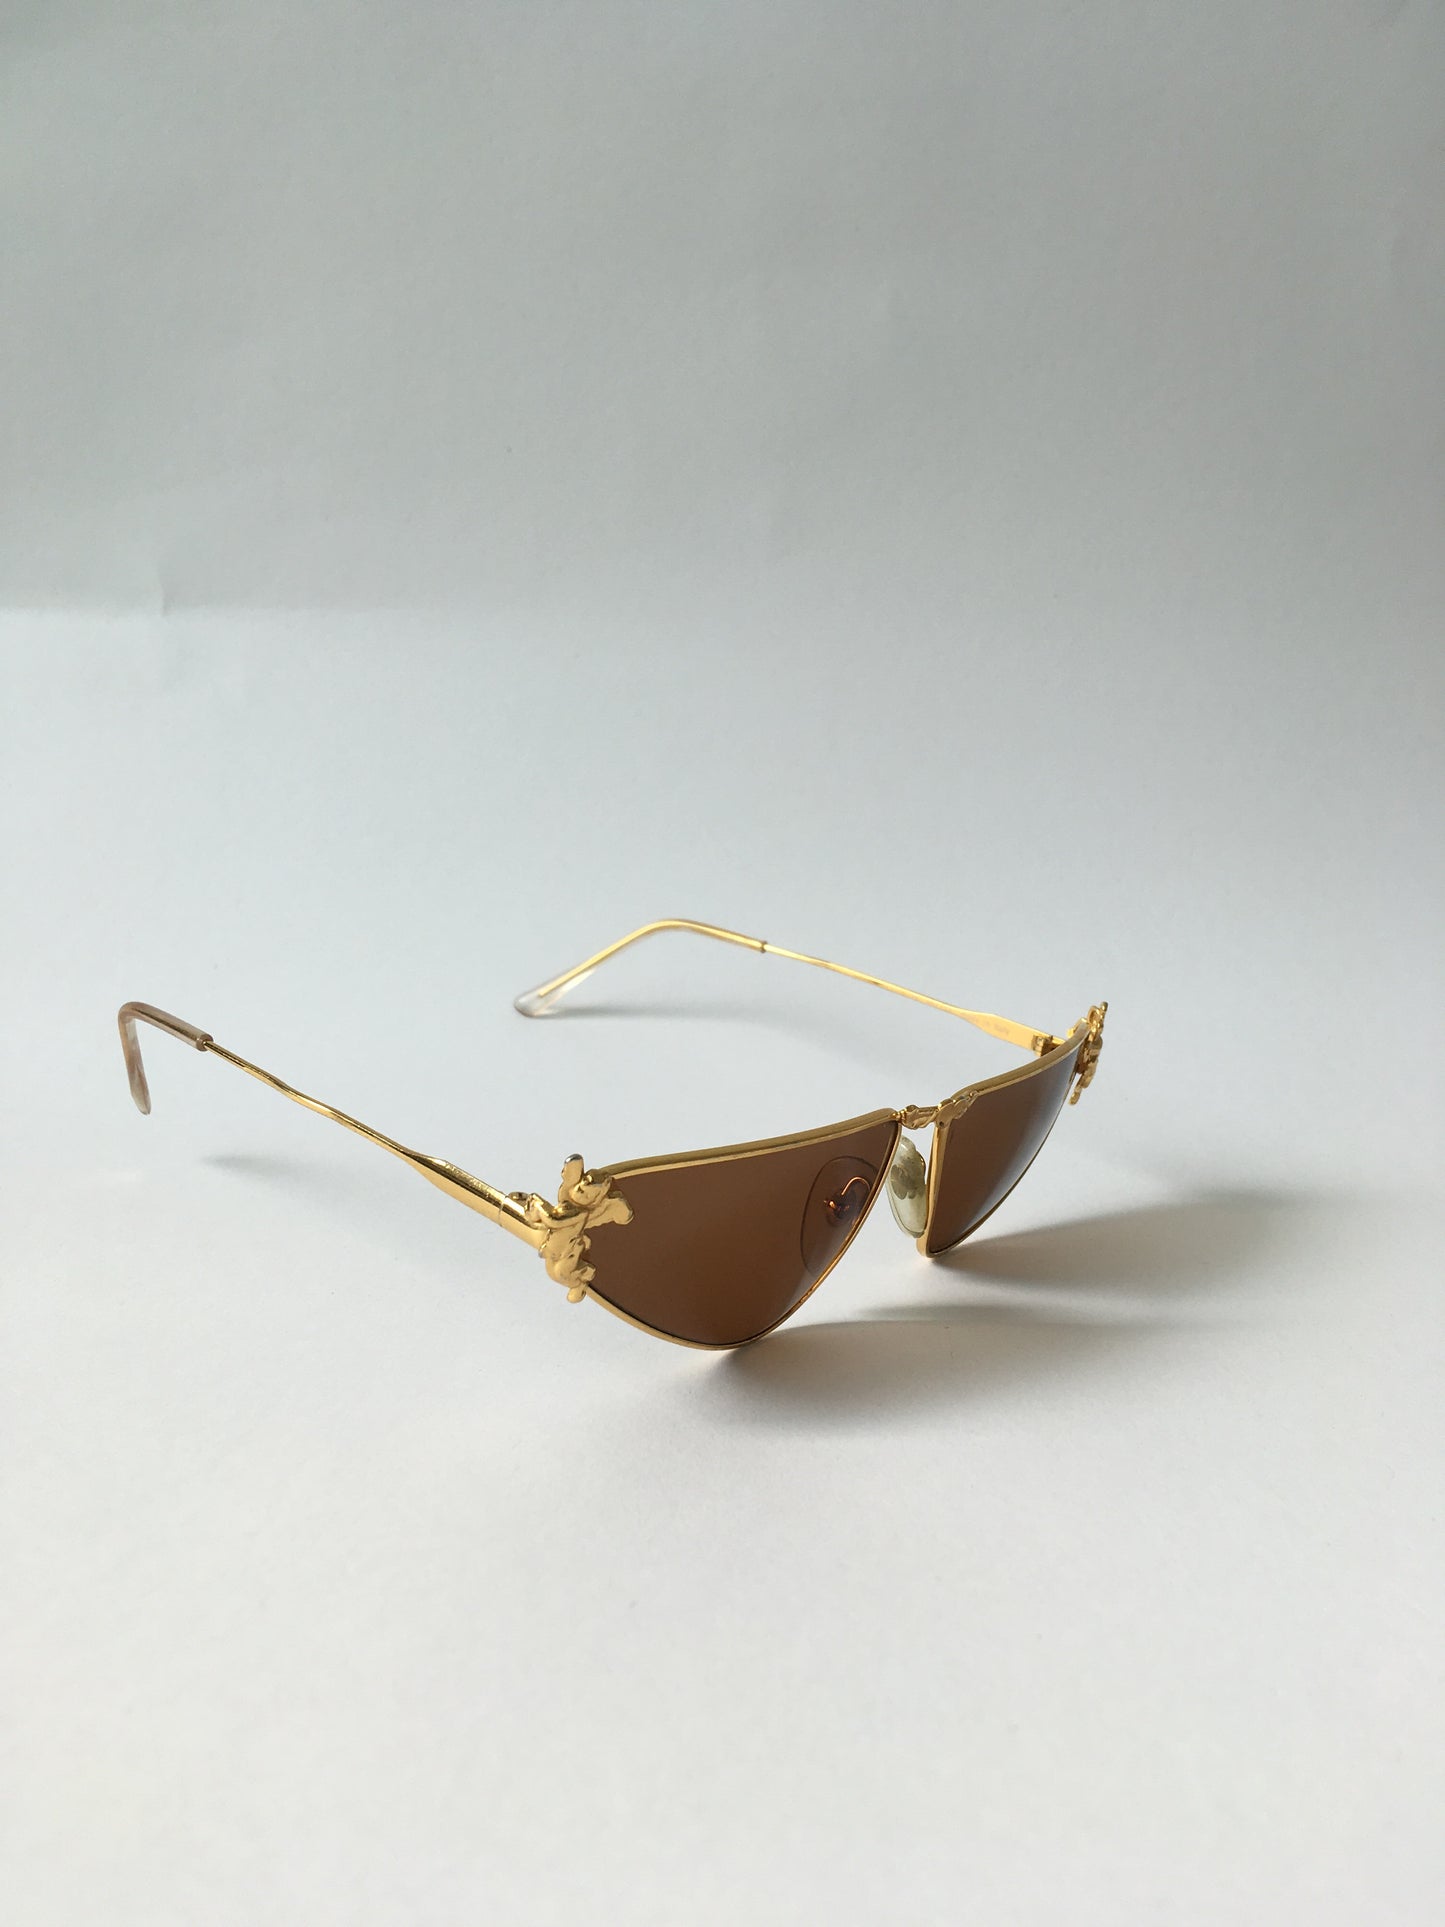 Vintage Moschino Sunglasses